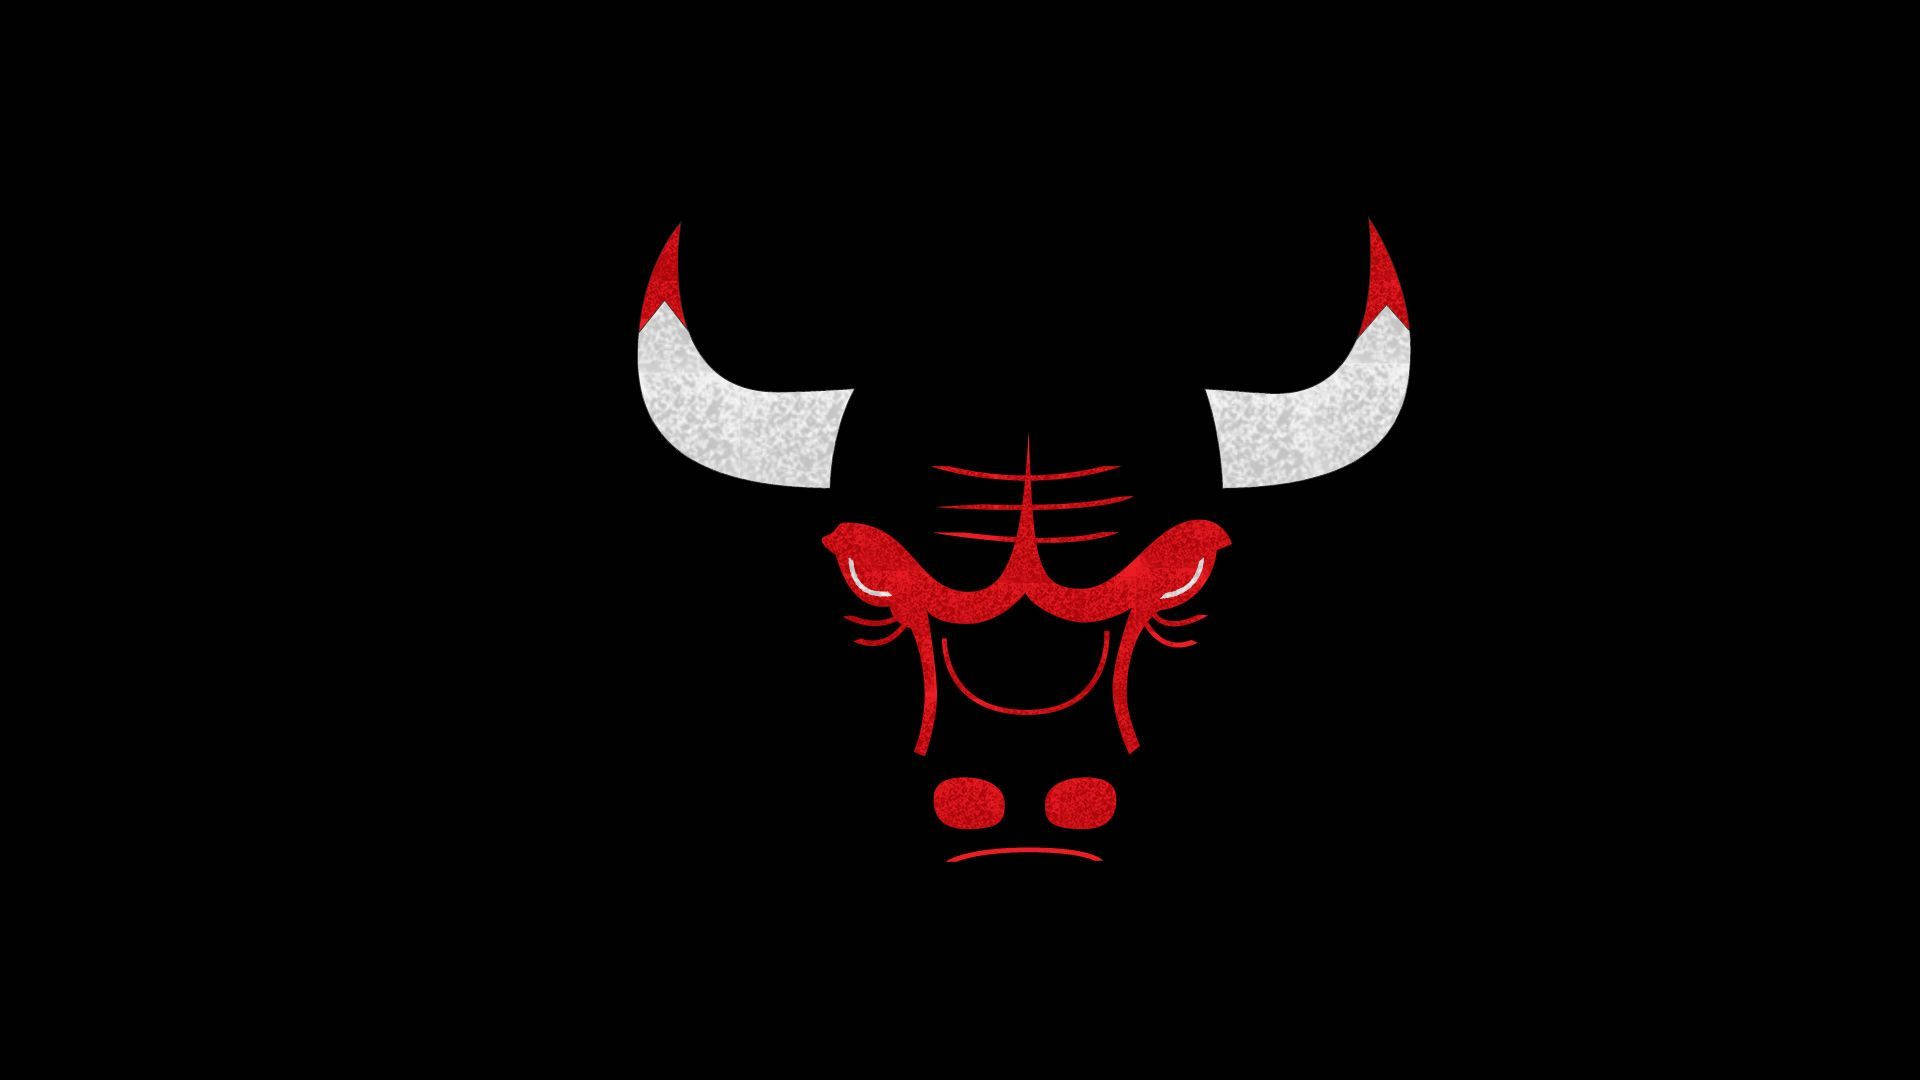 Chicago Bulls Silhouette Vector Art Logo Wallpaper